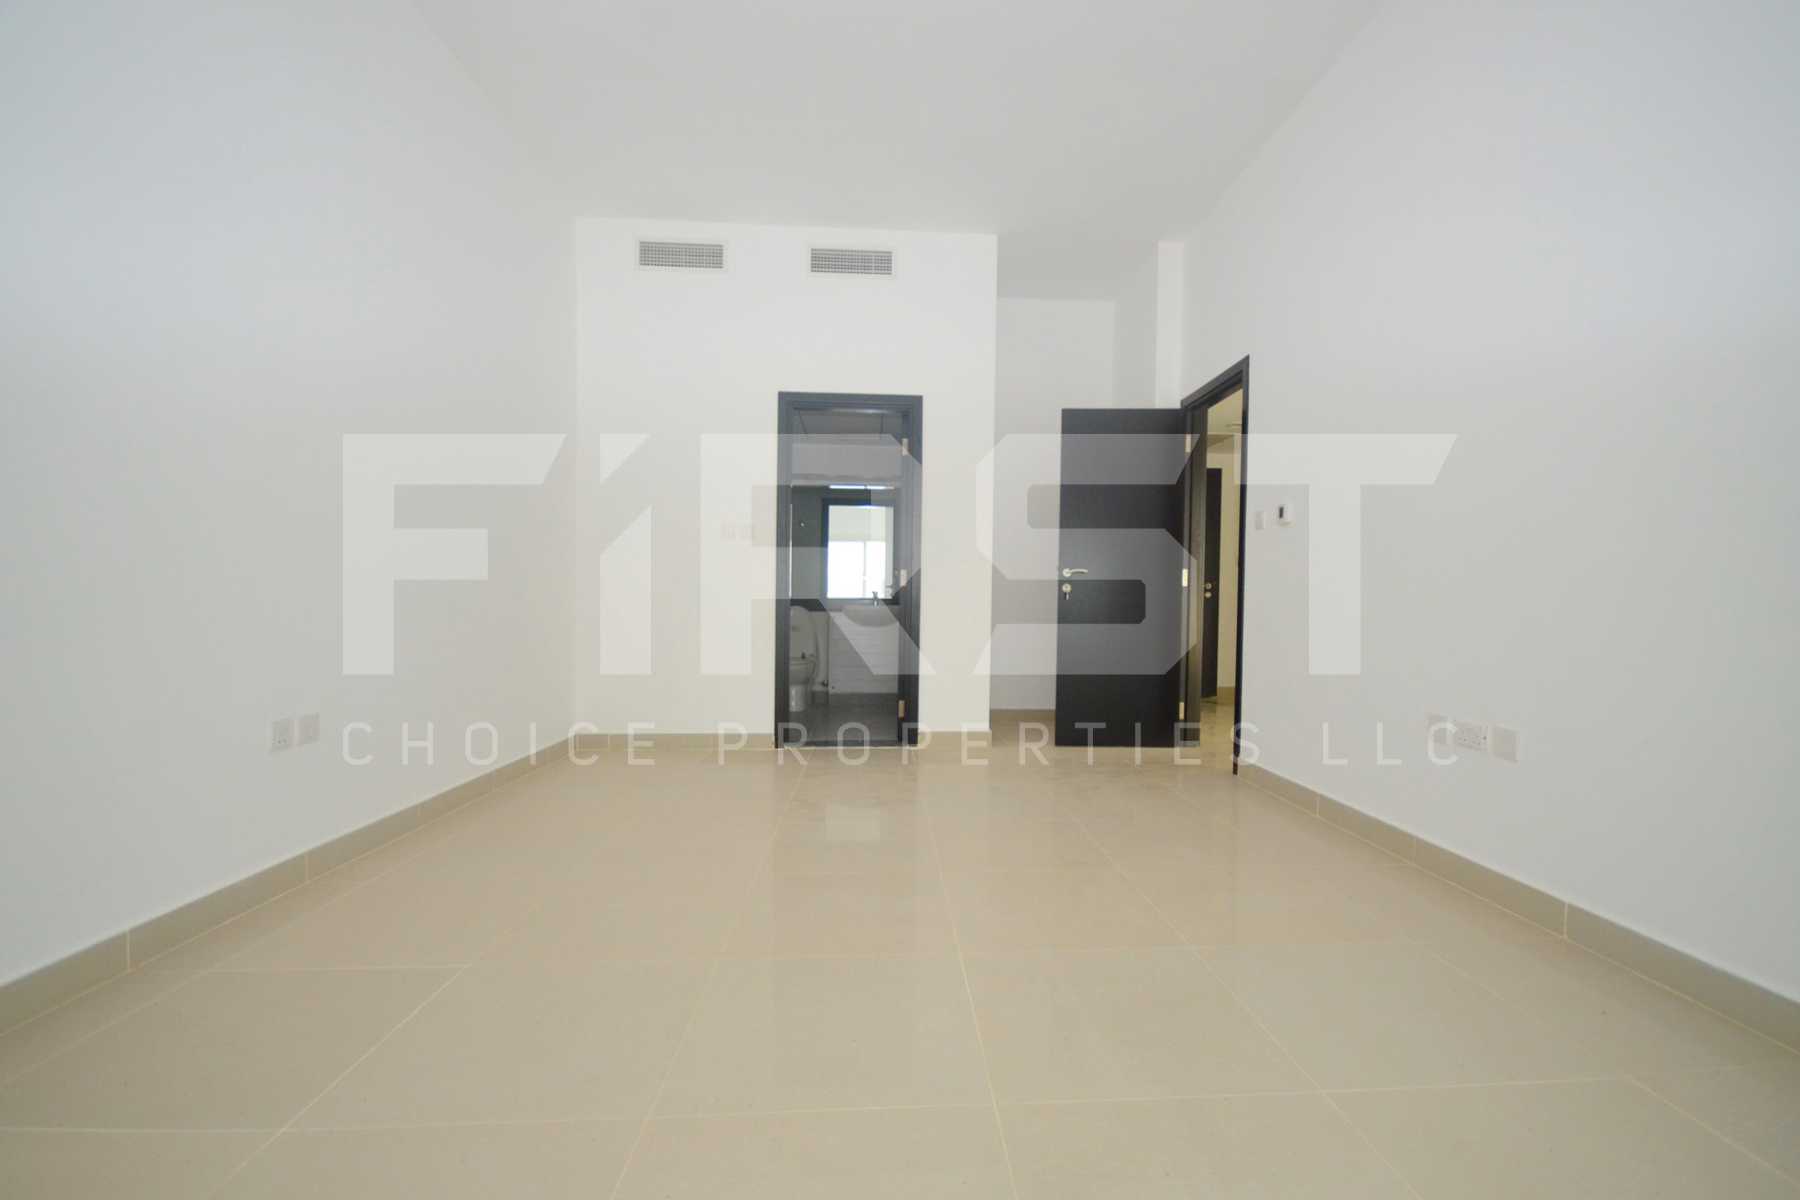 1 Bedroom Apartment Ground Floor in Al Reef Downtown Al Reef Abu Dhabi UAE (5).jpg